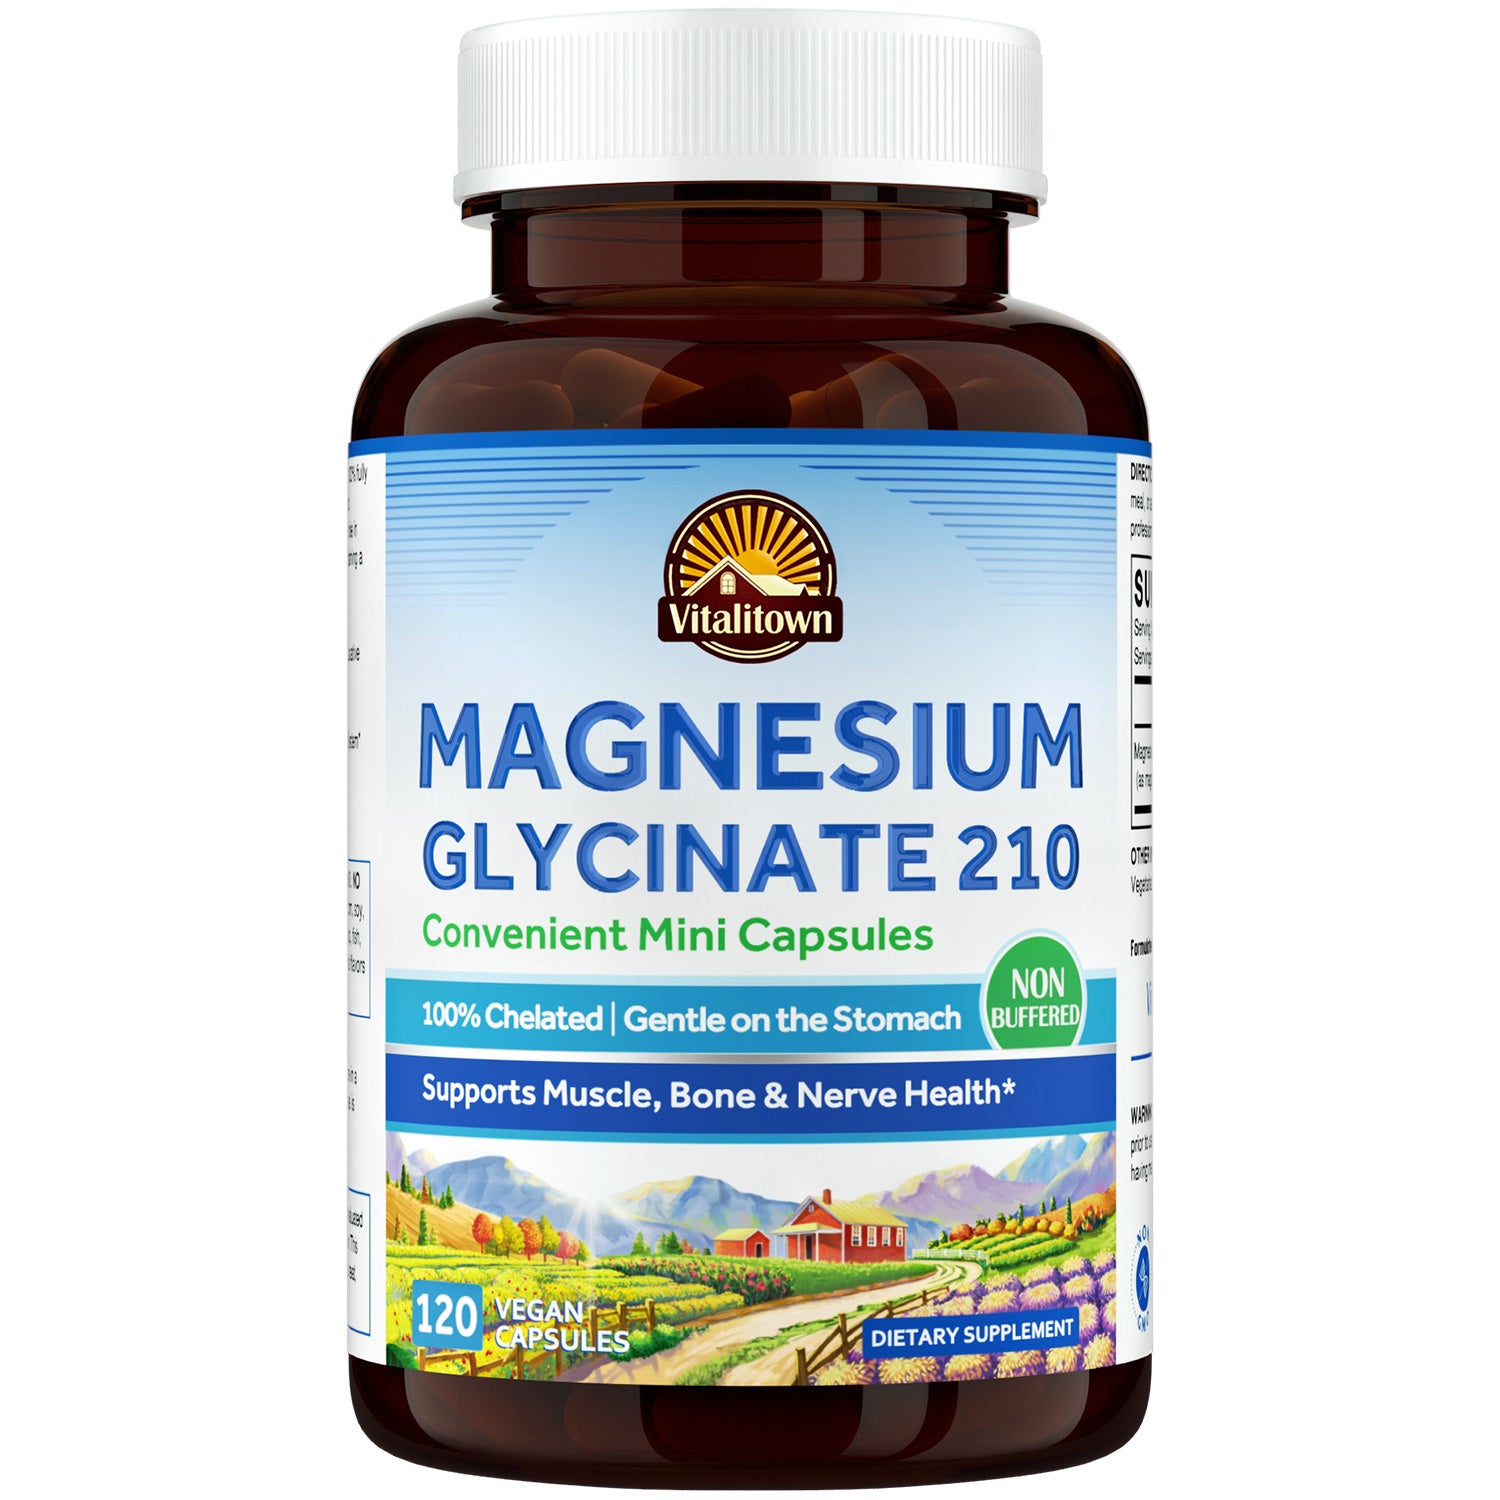 Magnesium Glycinate 210